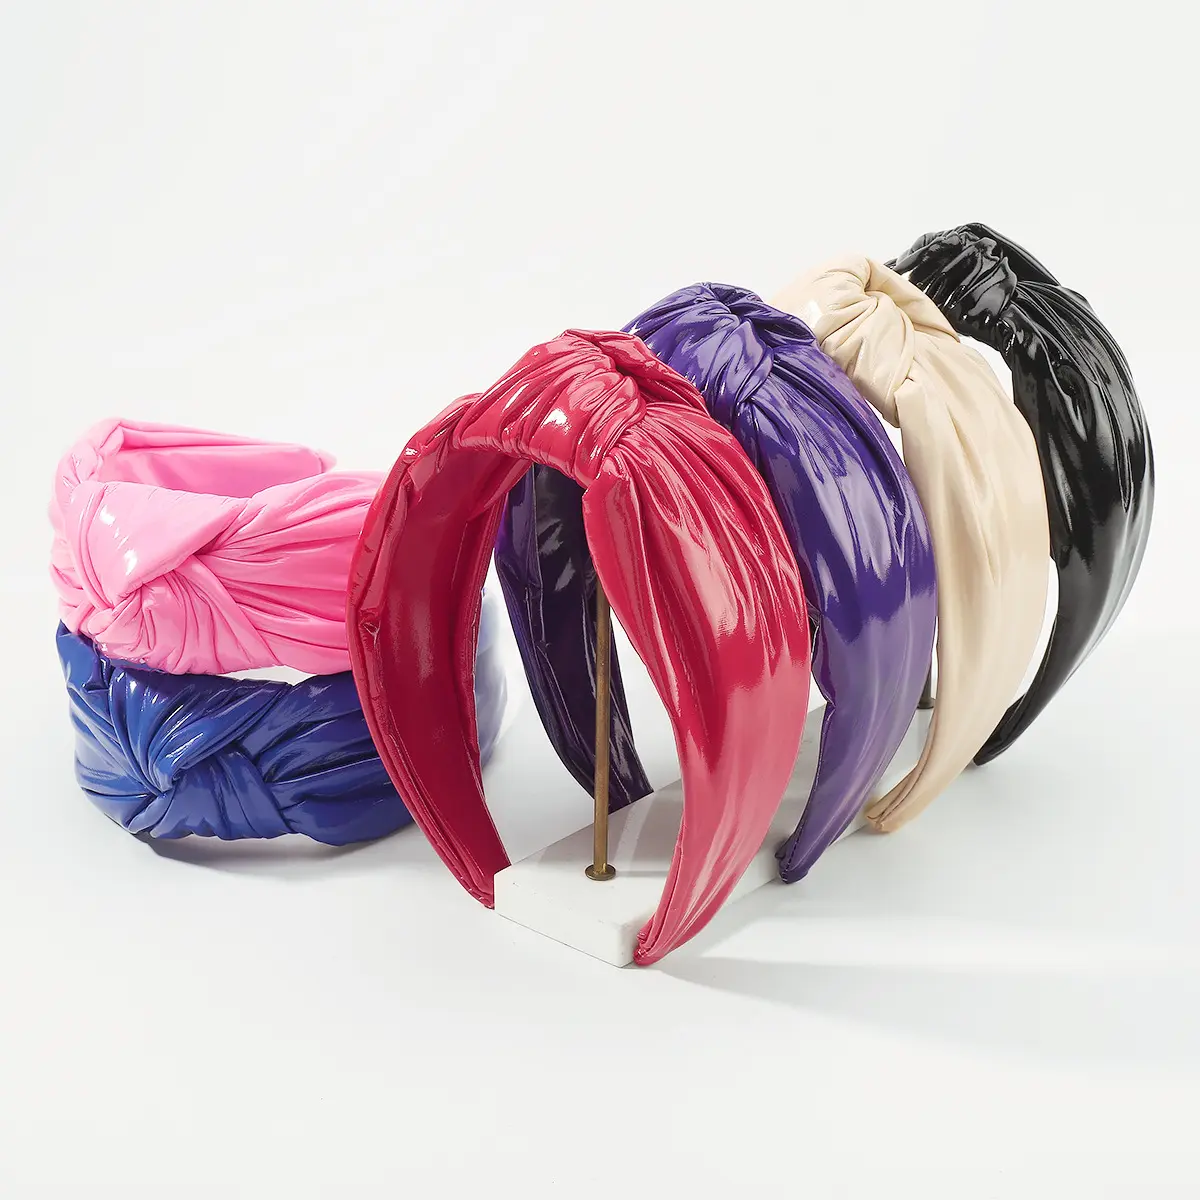 Da thiết kế lấy cảm hứng từ vòi hoa sen phi headbands phụ nữ mỹ phẩm Bridal sang trọng Spa Headband hairband